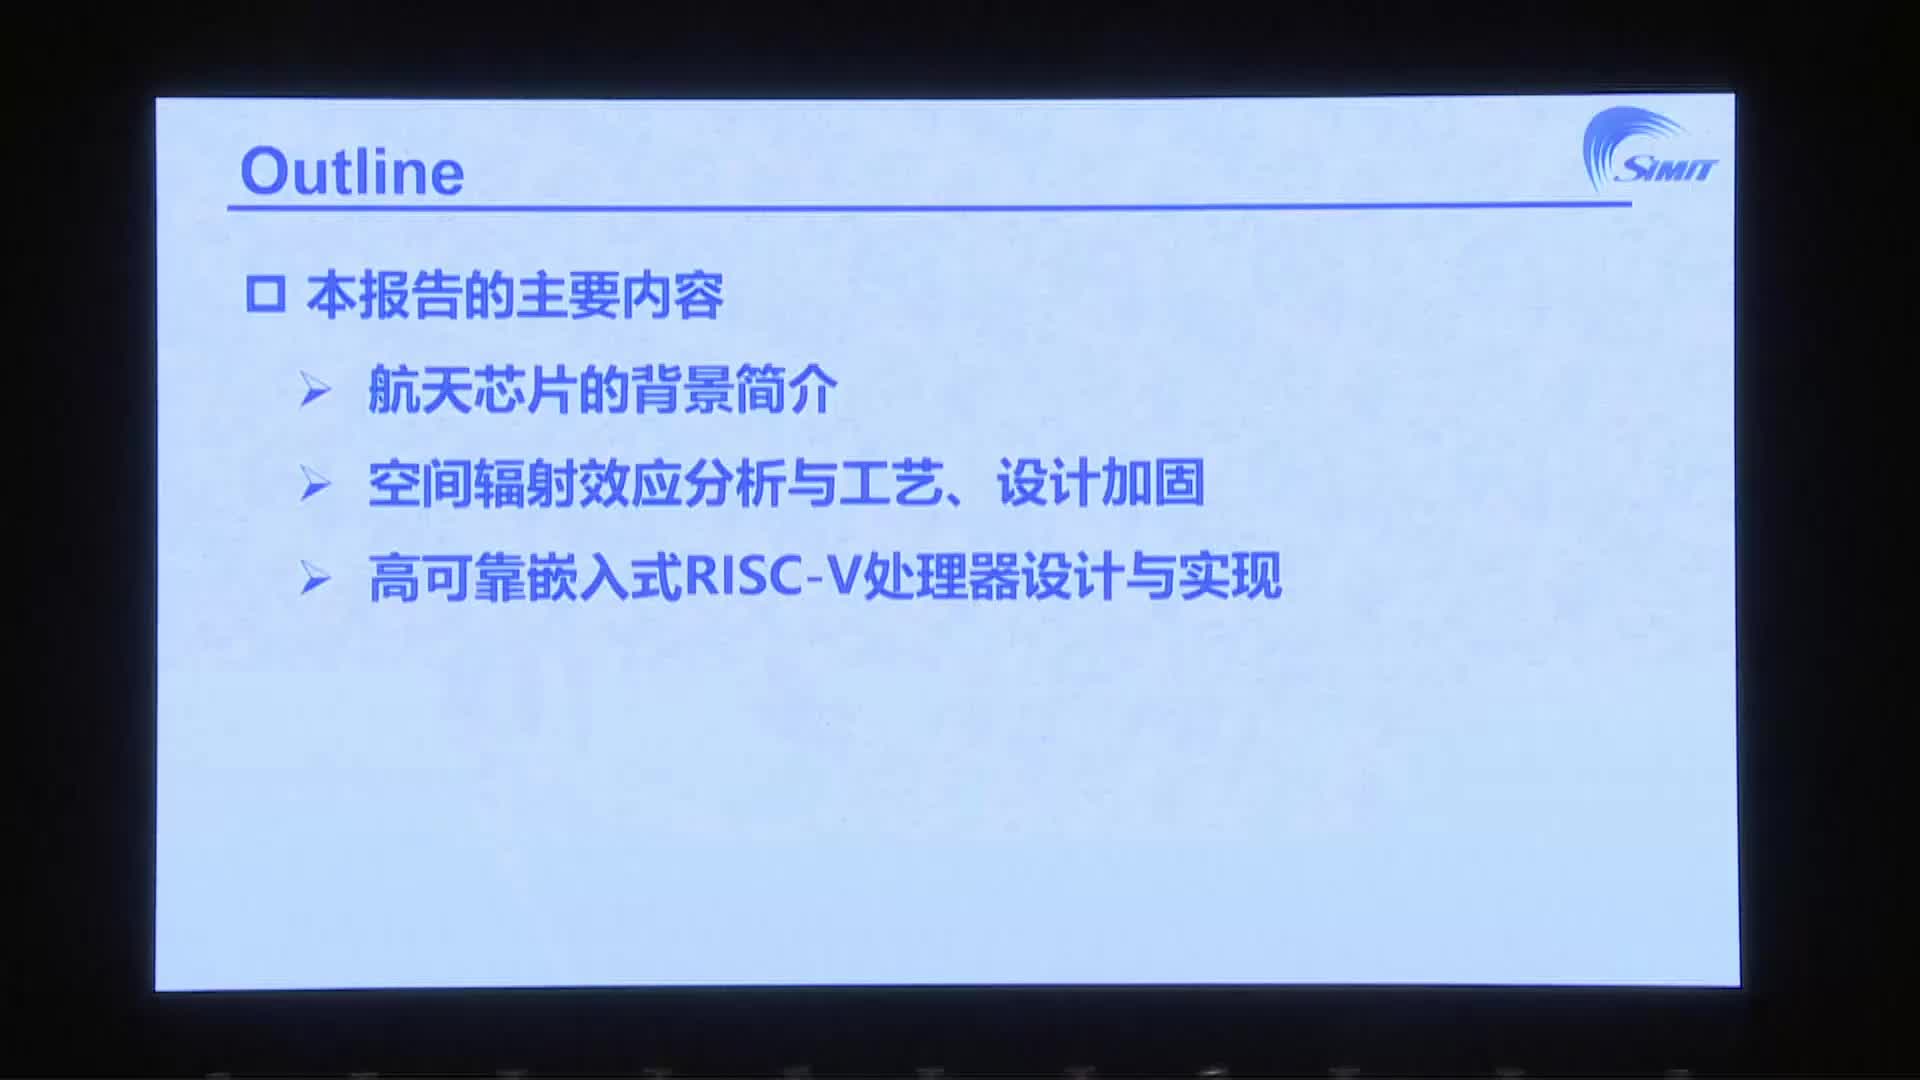 郑云龙- 宇航级高可靠嵌入式RISC-V处理器的研究与进展 - 第一届 RISC-V 中国峰会 1